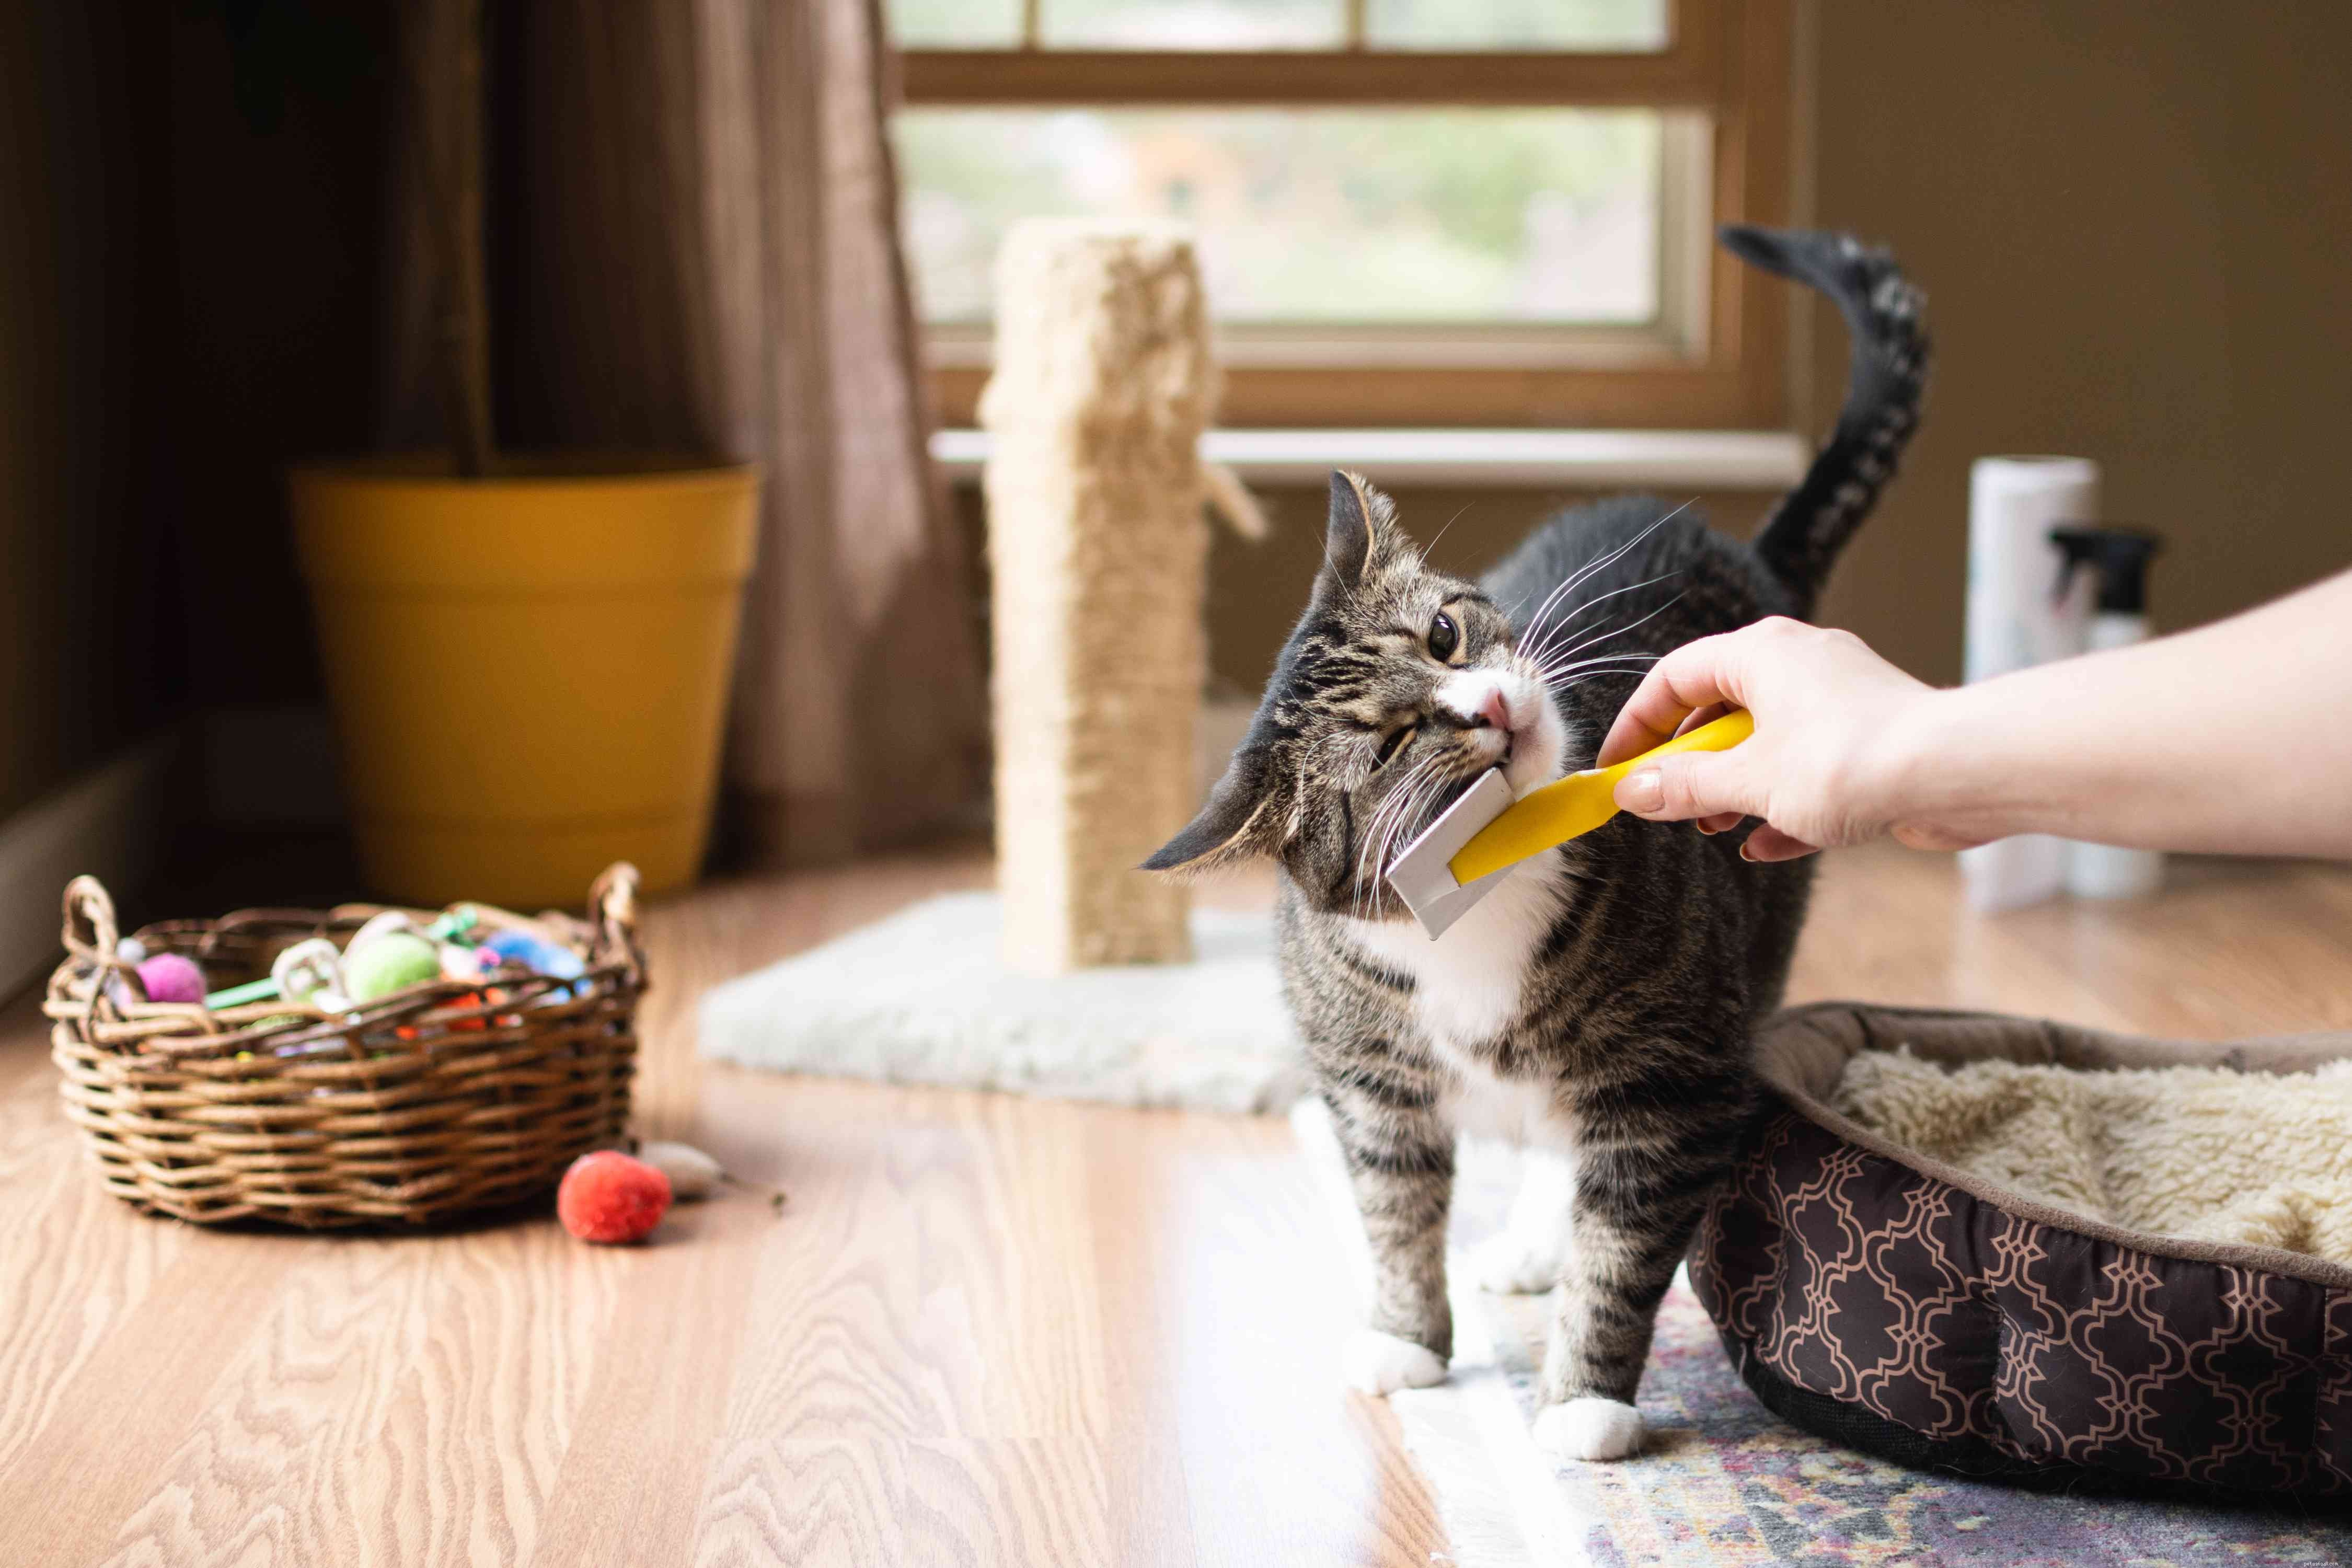 Hoe u uw huis schoon kunt houden met huisdieren binnenshuis